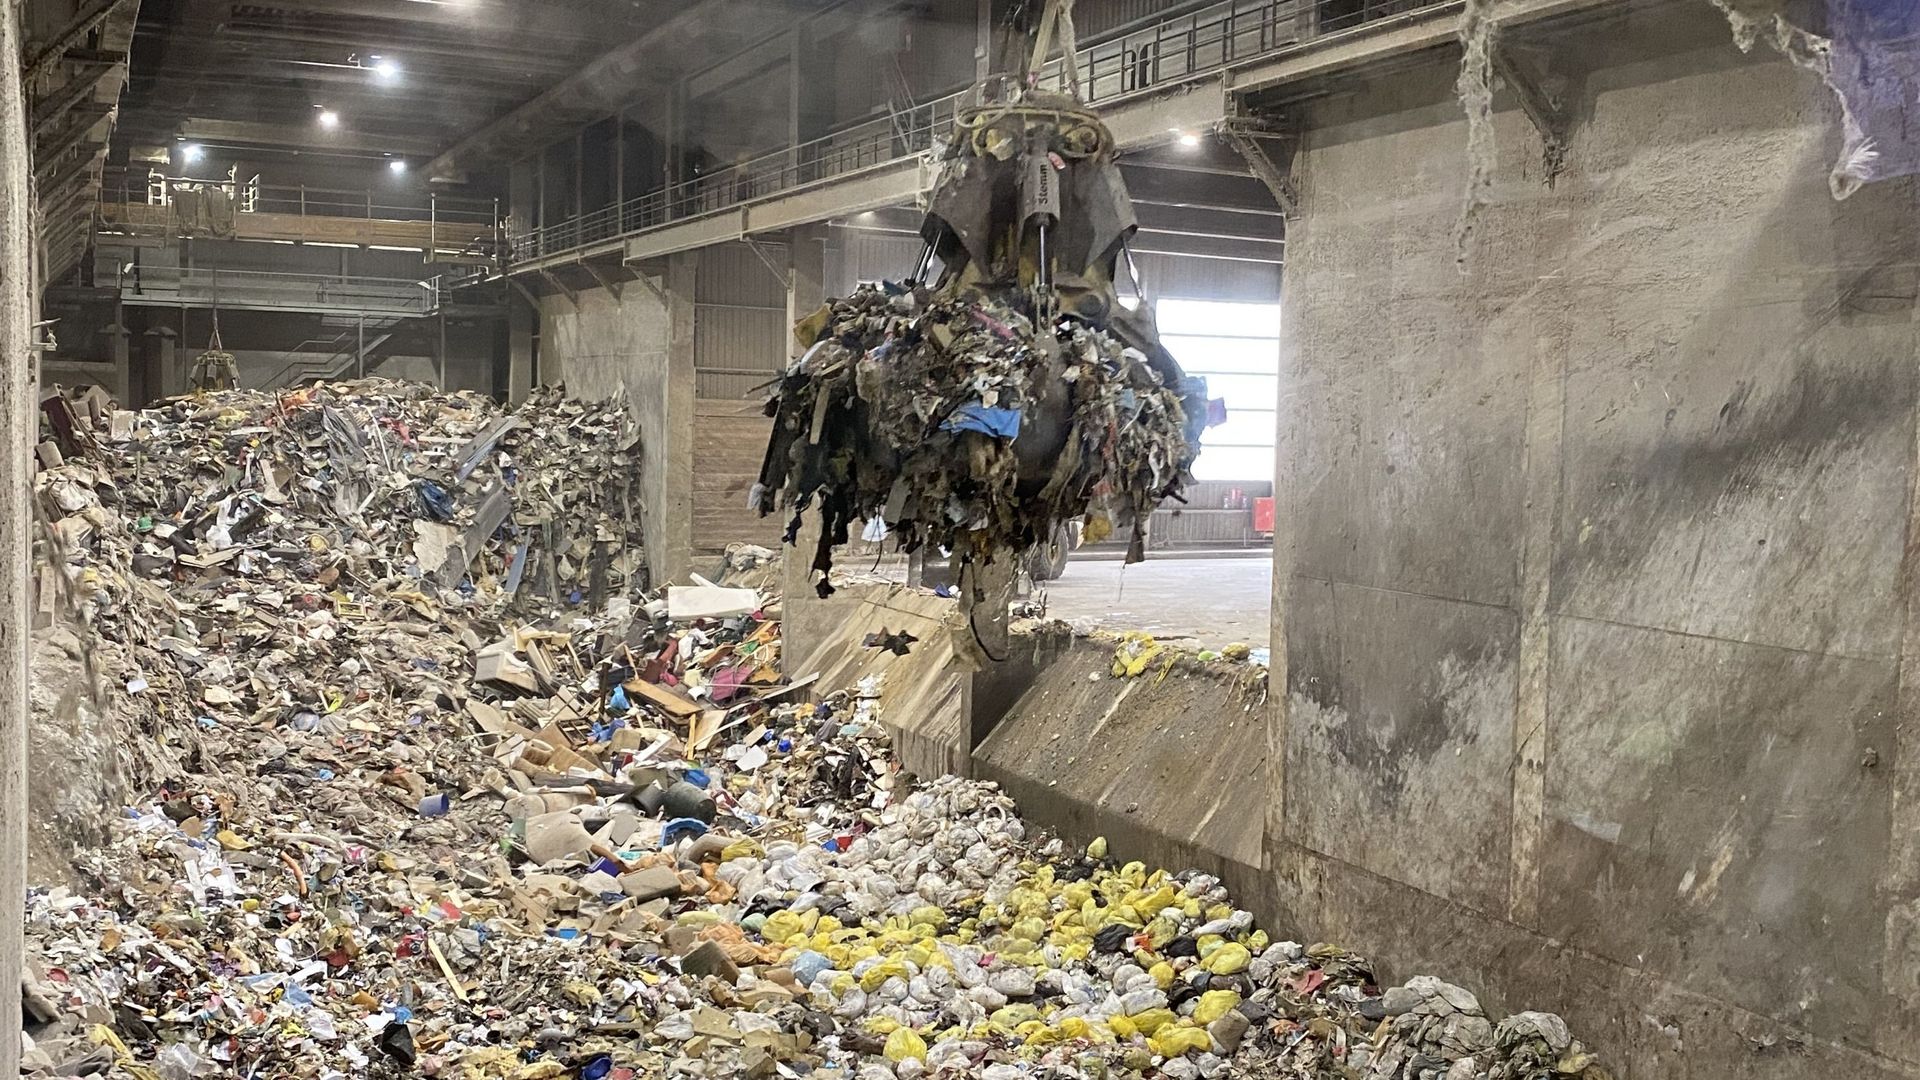 L'espacement des collectes devrait inciter les citoyens à mieux trier leurs déchets, en retirant les matières organiques de la poubelle classique.